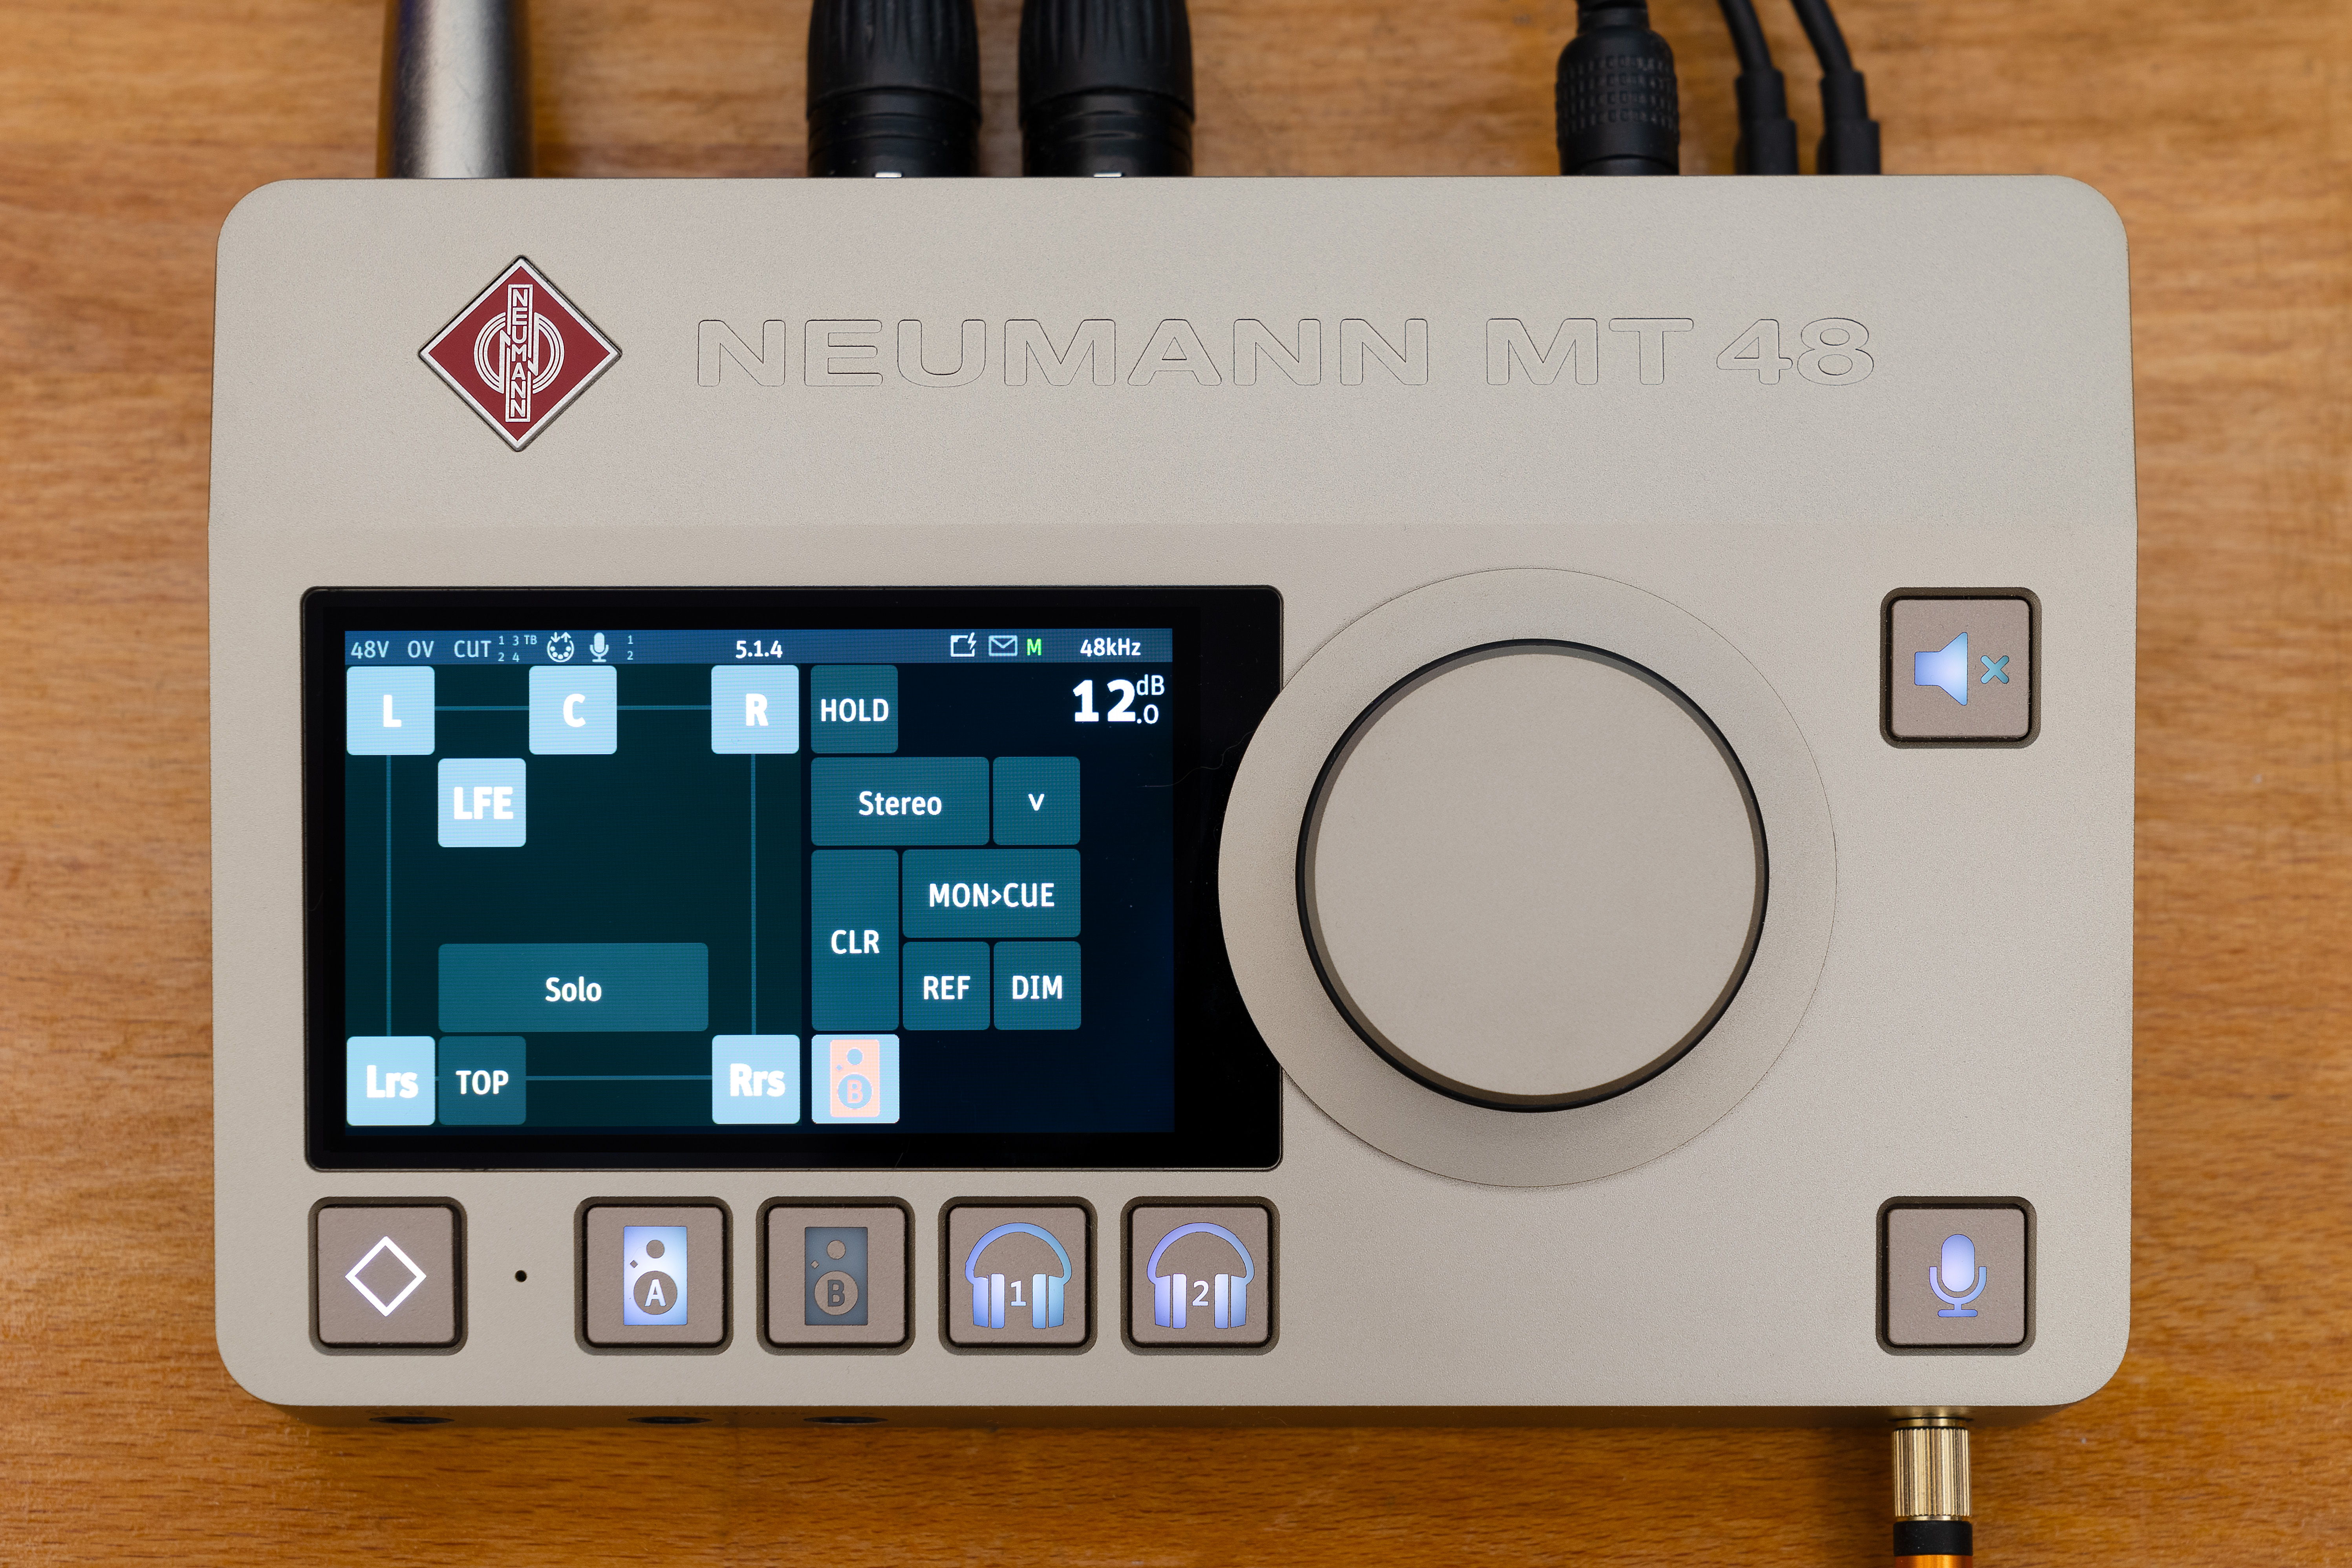 Les nouvelles fonctionnalités de l’interface audio Neumann MT 48 la rendent compatible avec les formats audio immersifs